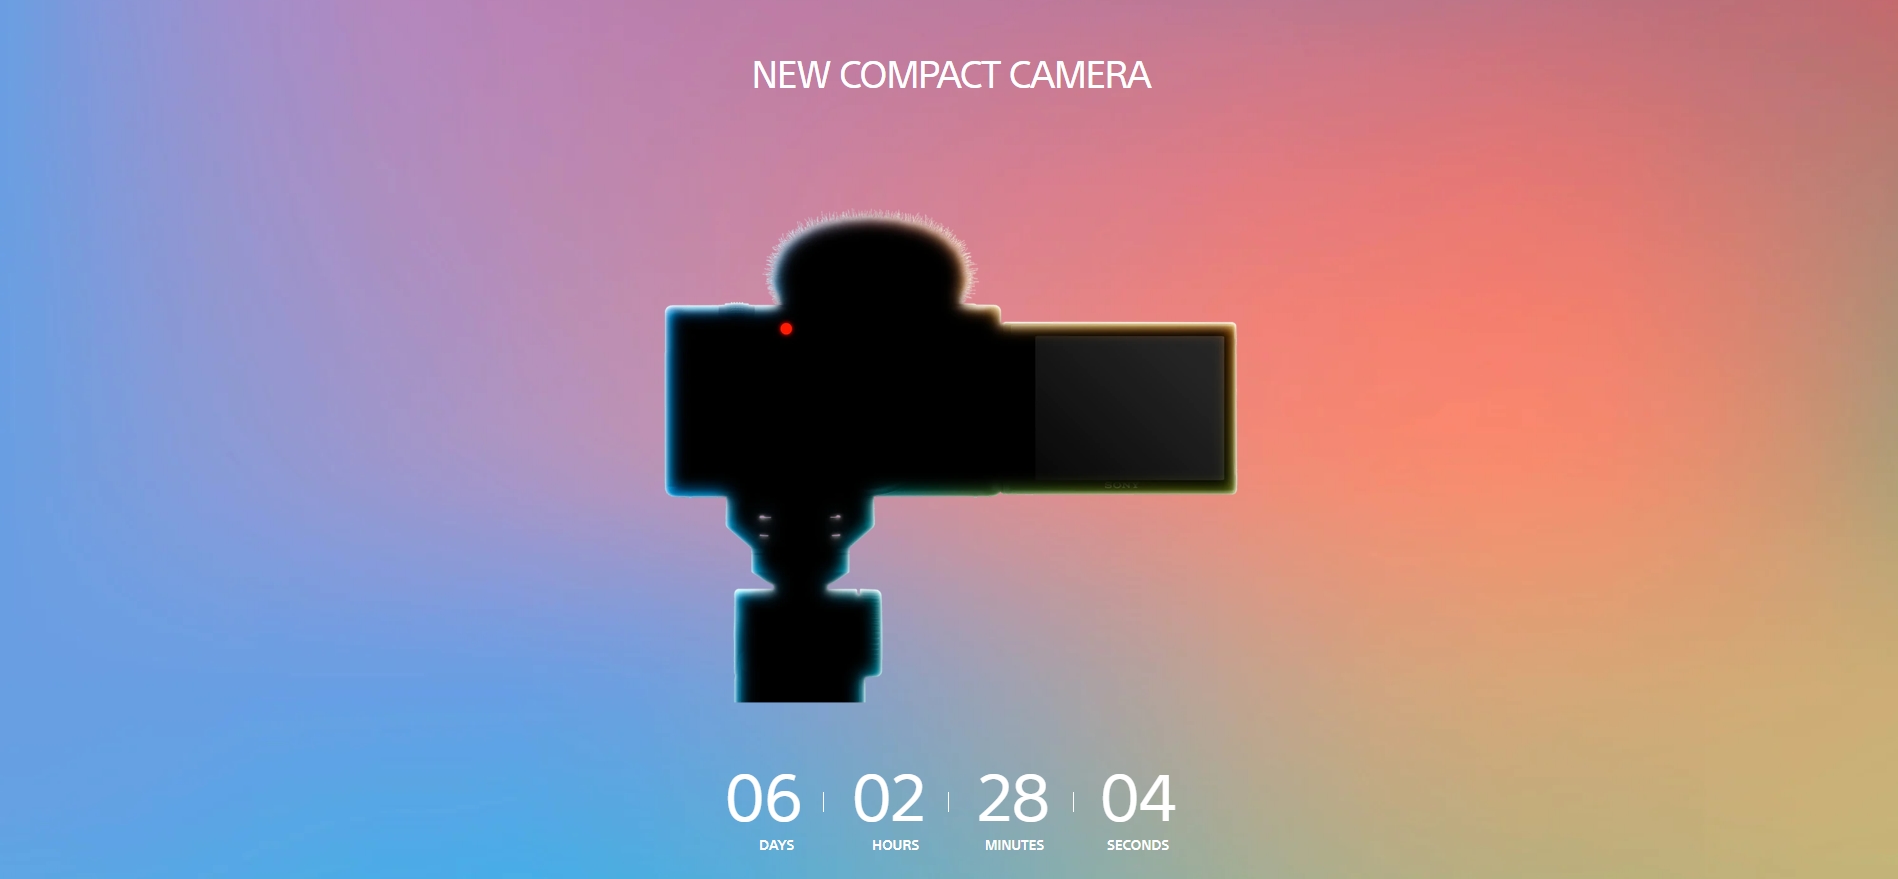 Sony hé lộ một chiếc máy ảnh compact mới trên website